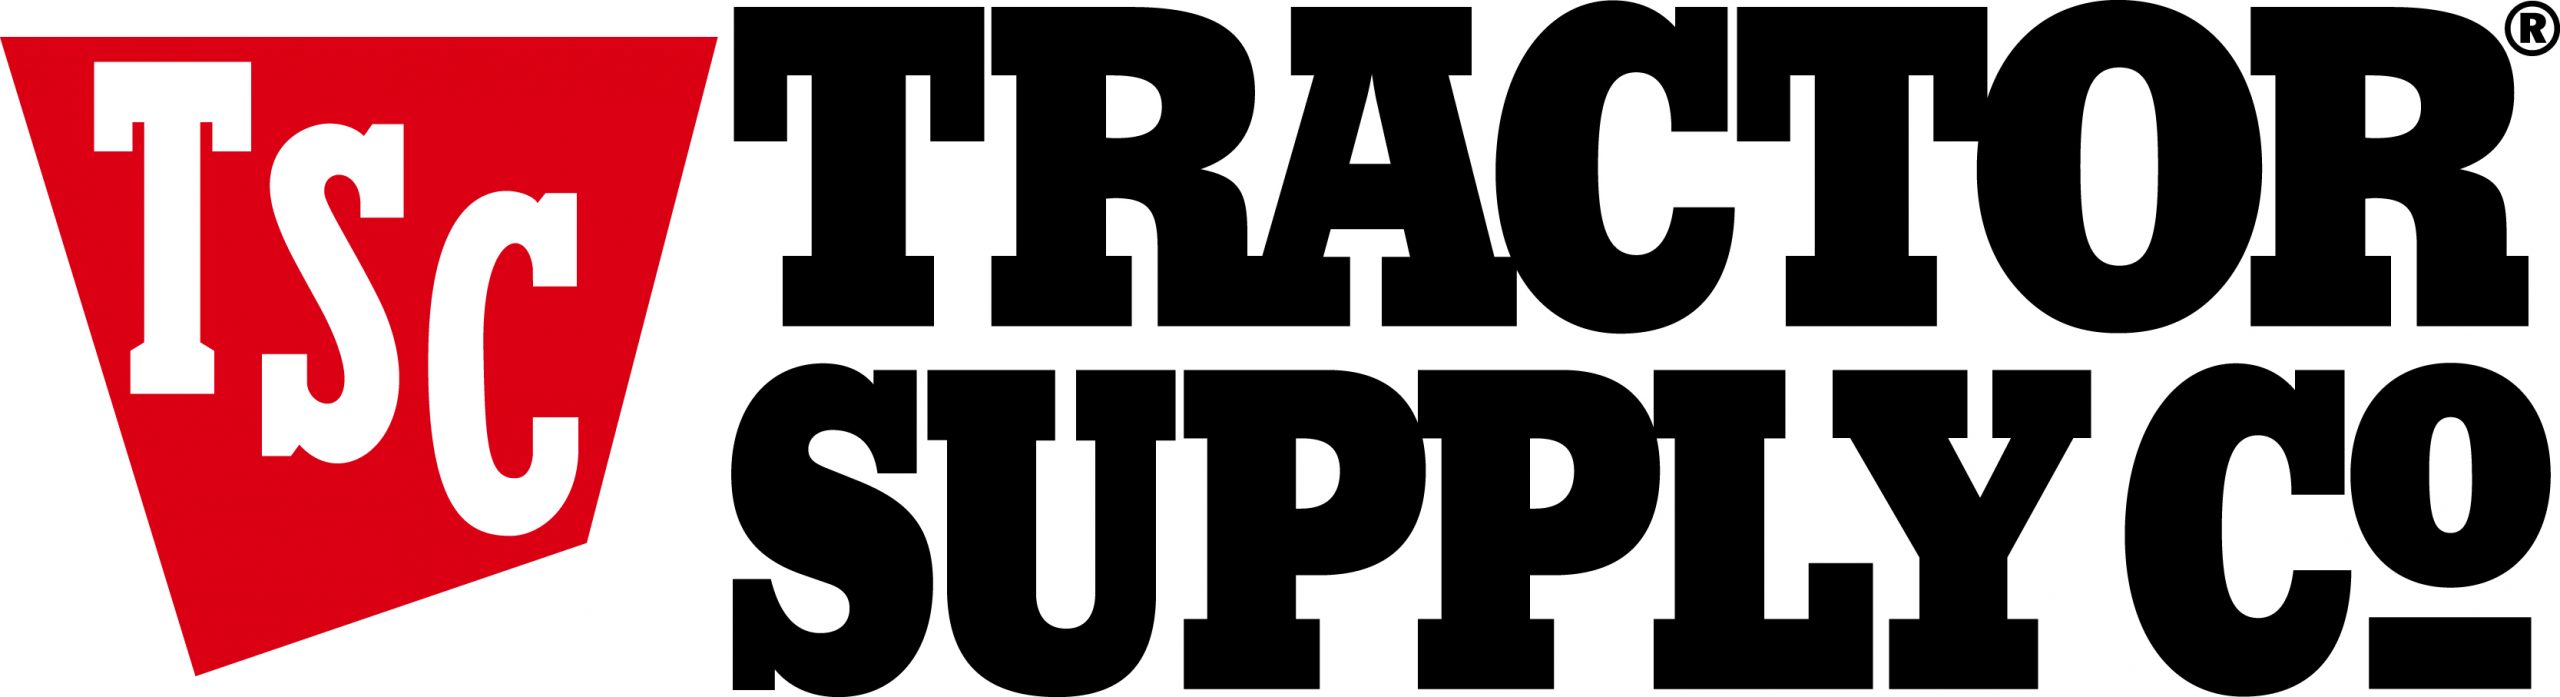 Tractor-Supply-Company Logo